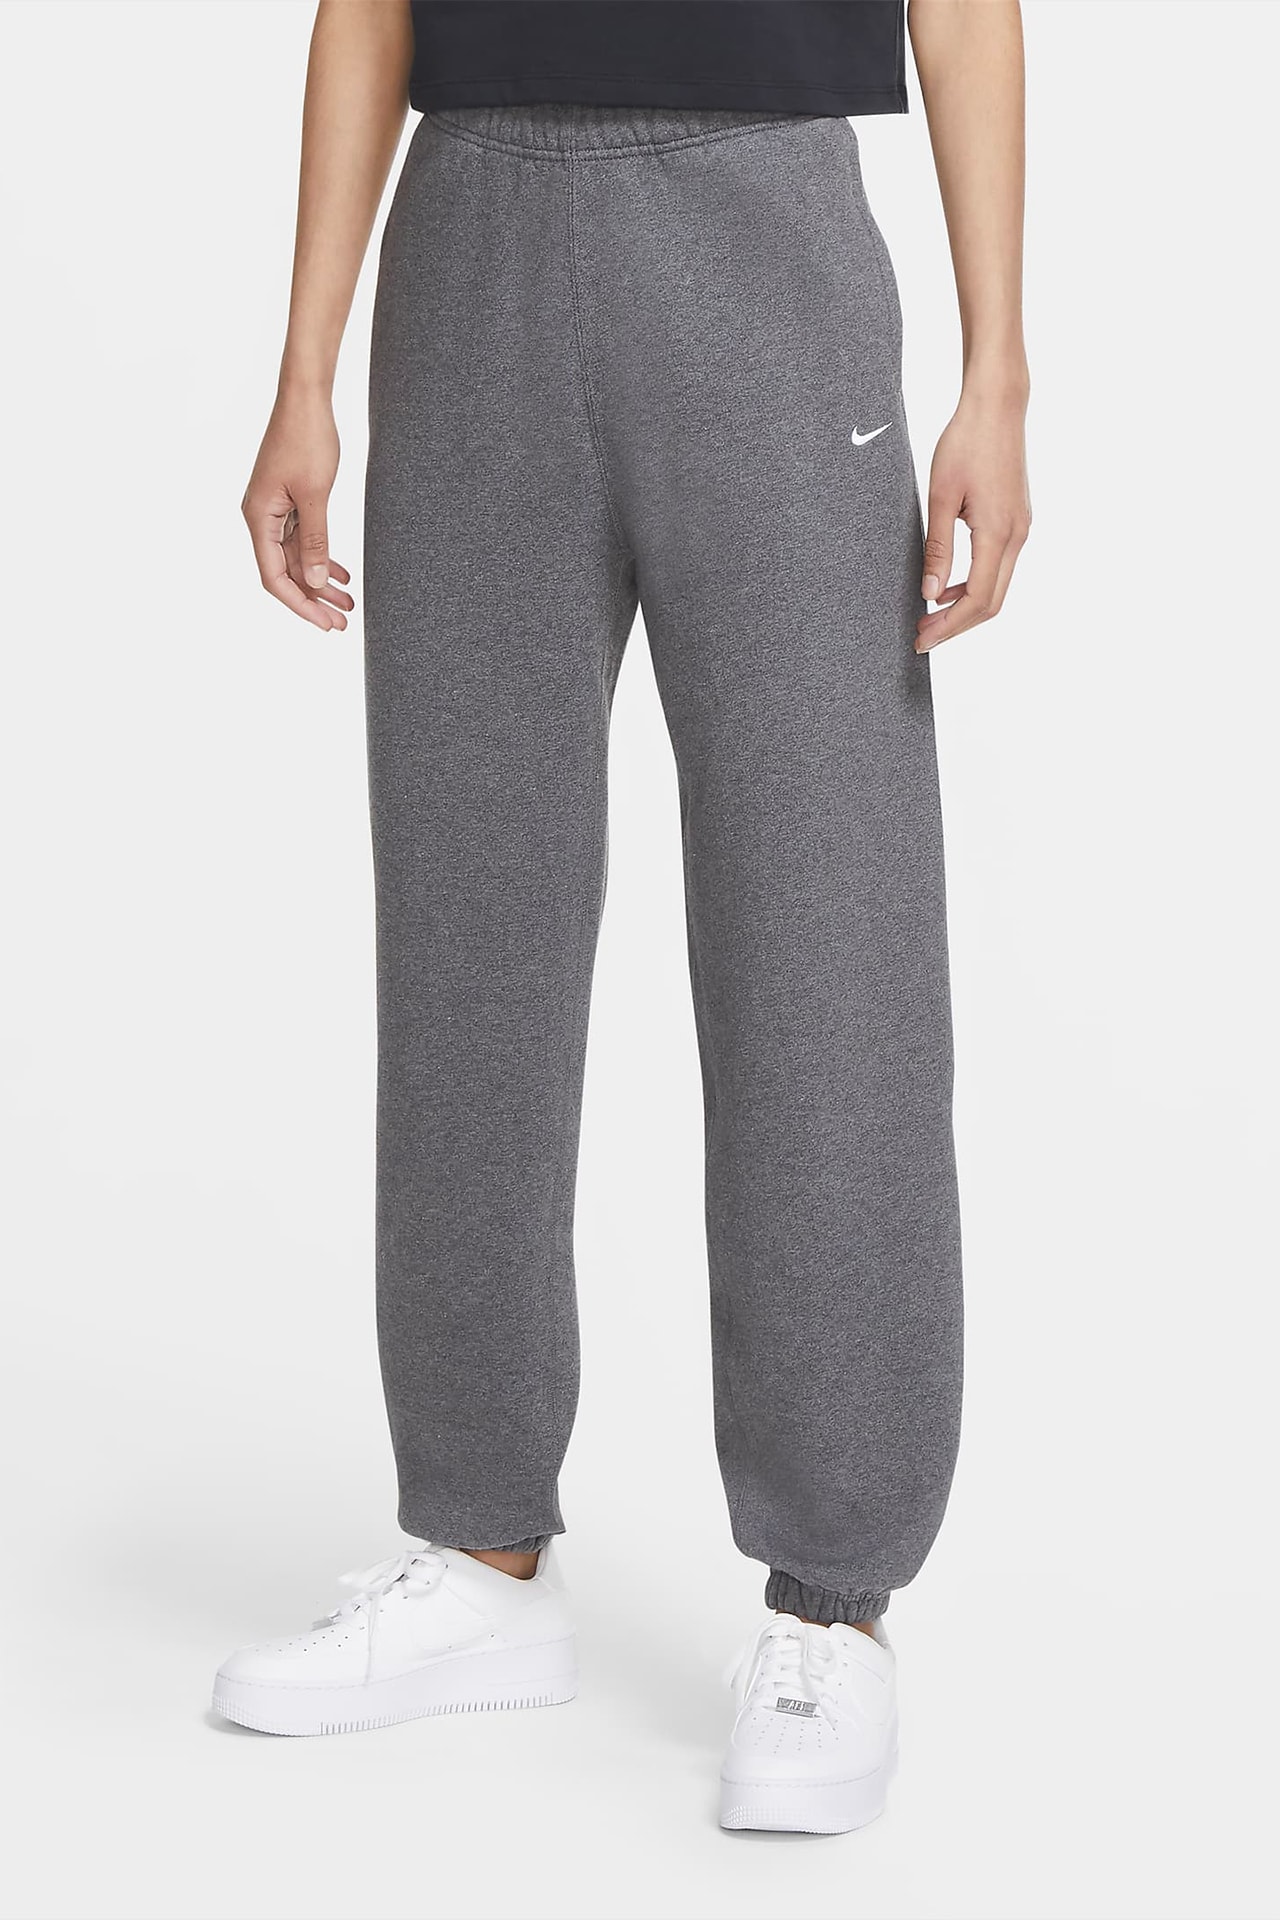 Nike NikeLab Women Fleece Sweatpants Swoosh Logo Charcoal Heather Gray Grey